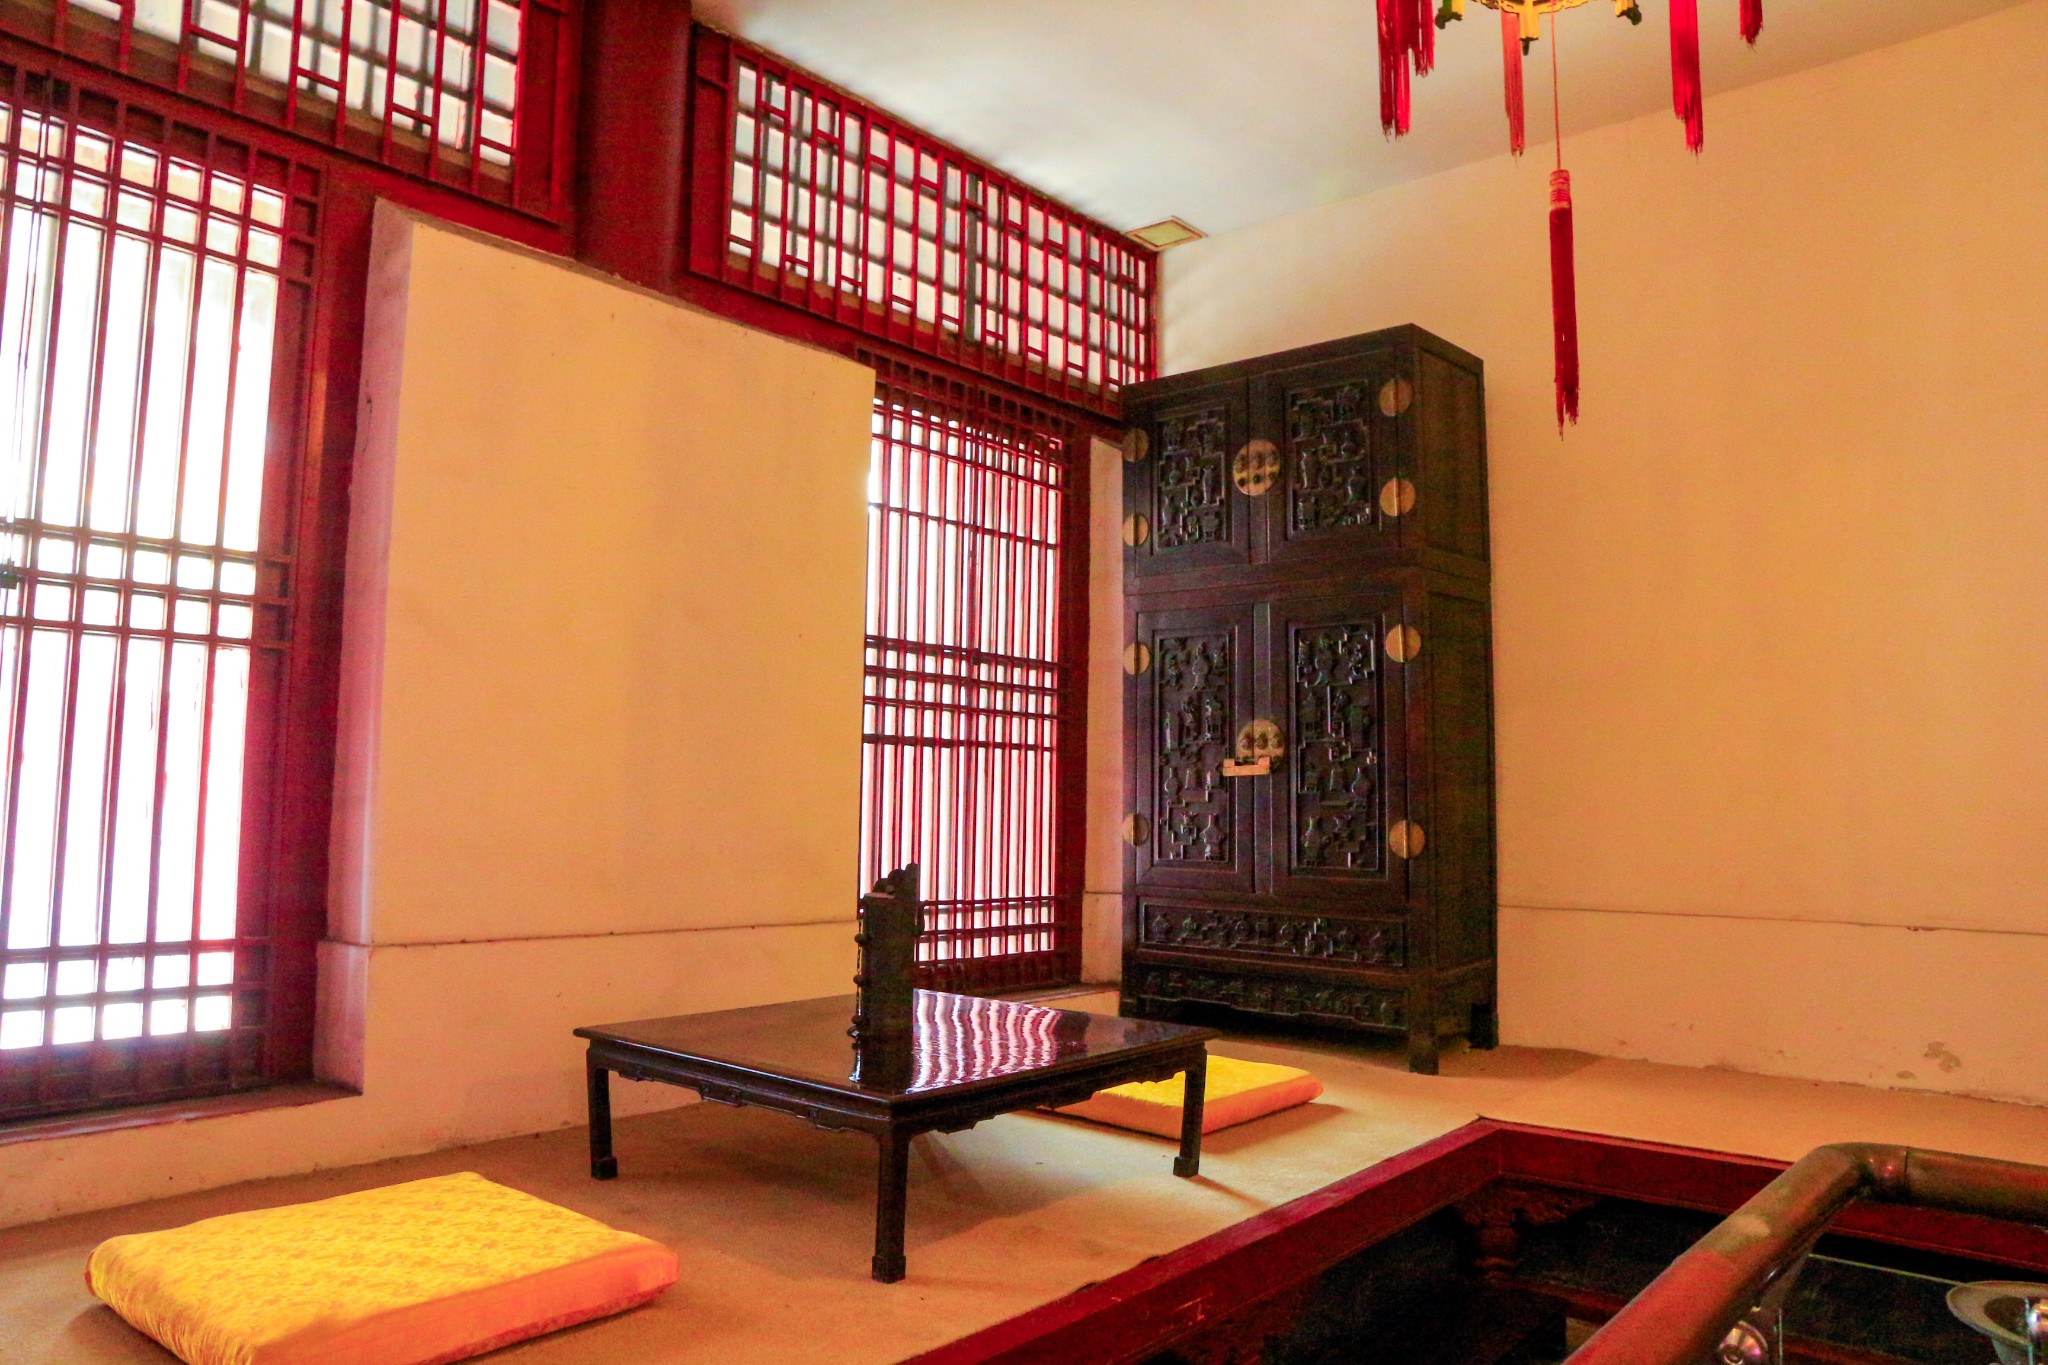 沈阳故宫博物院全攻略,中国仅存的两大宫殿建筑群之一 